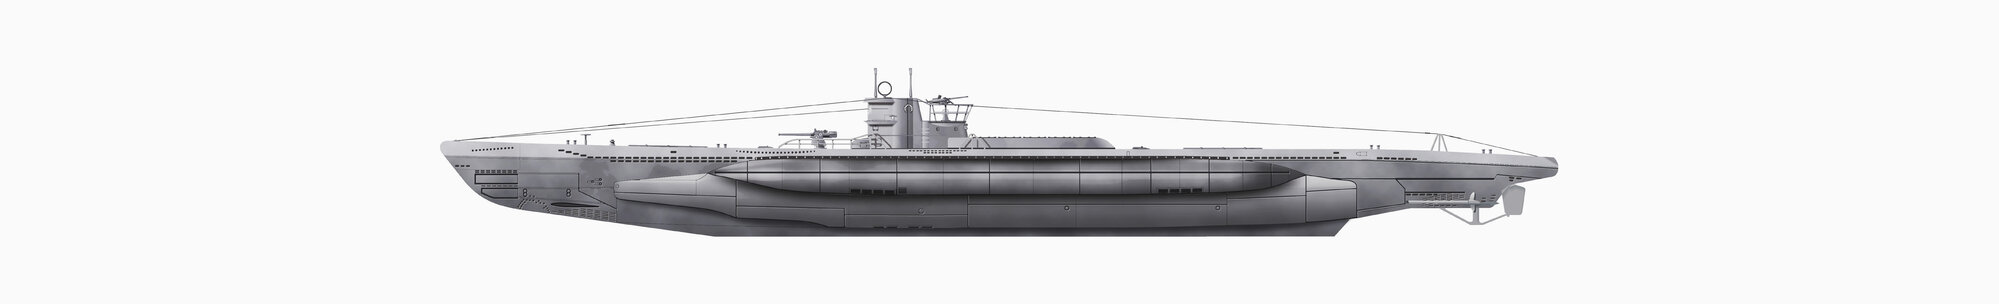 Illustration eines U-Boots vor weißem Hintergrund, Nahaufnahme - WBF001110